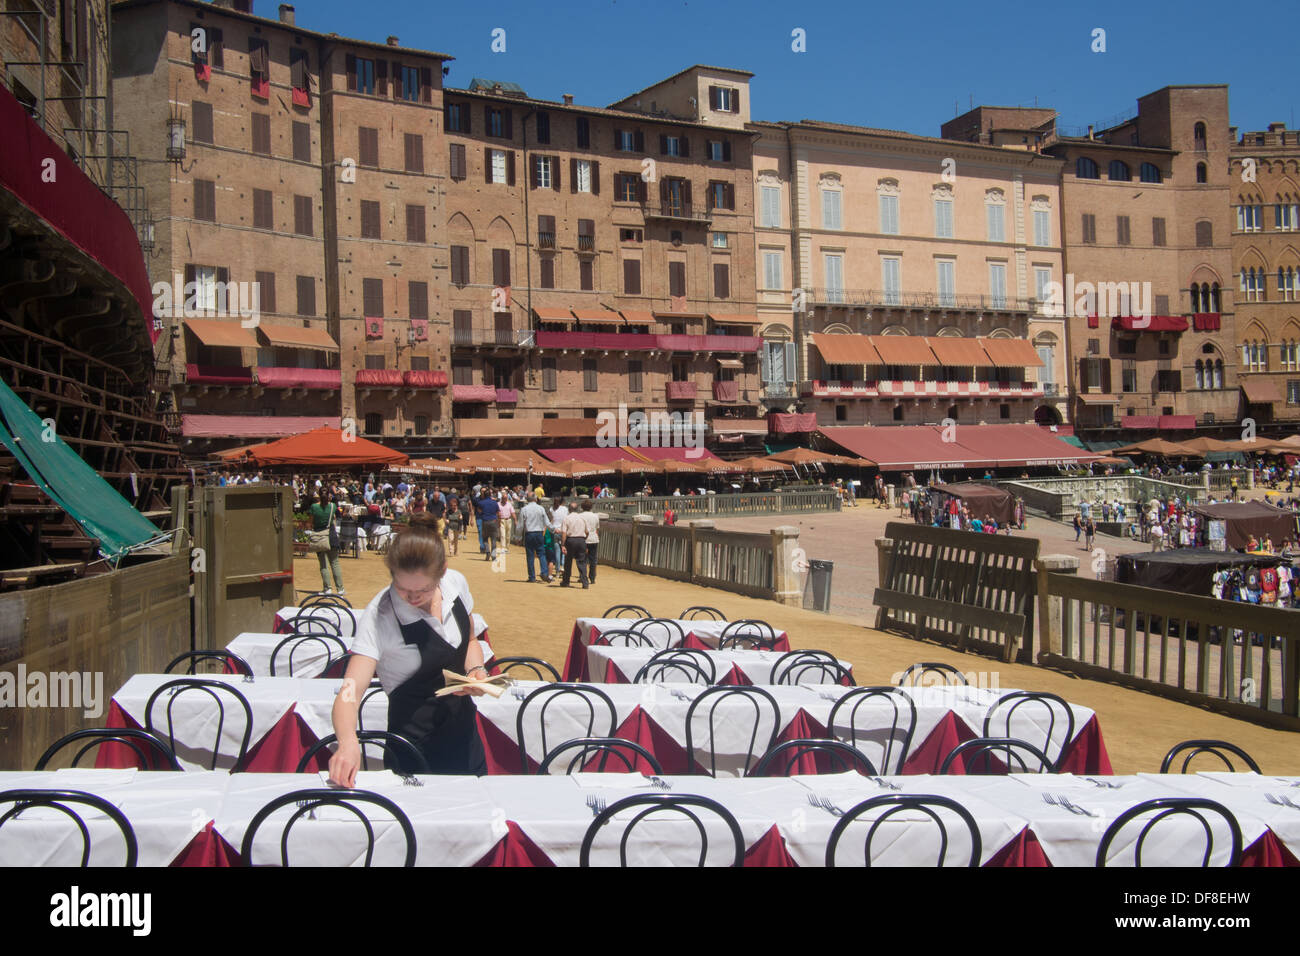 Il Campo, Sienne, avec tables de restaurant d'être posé sur la piste de course du Palio temporaire, Toscane, Italie. Banque D'Images